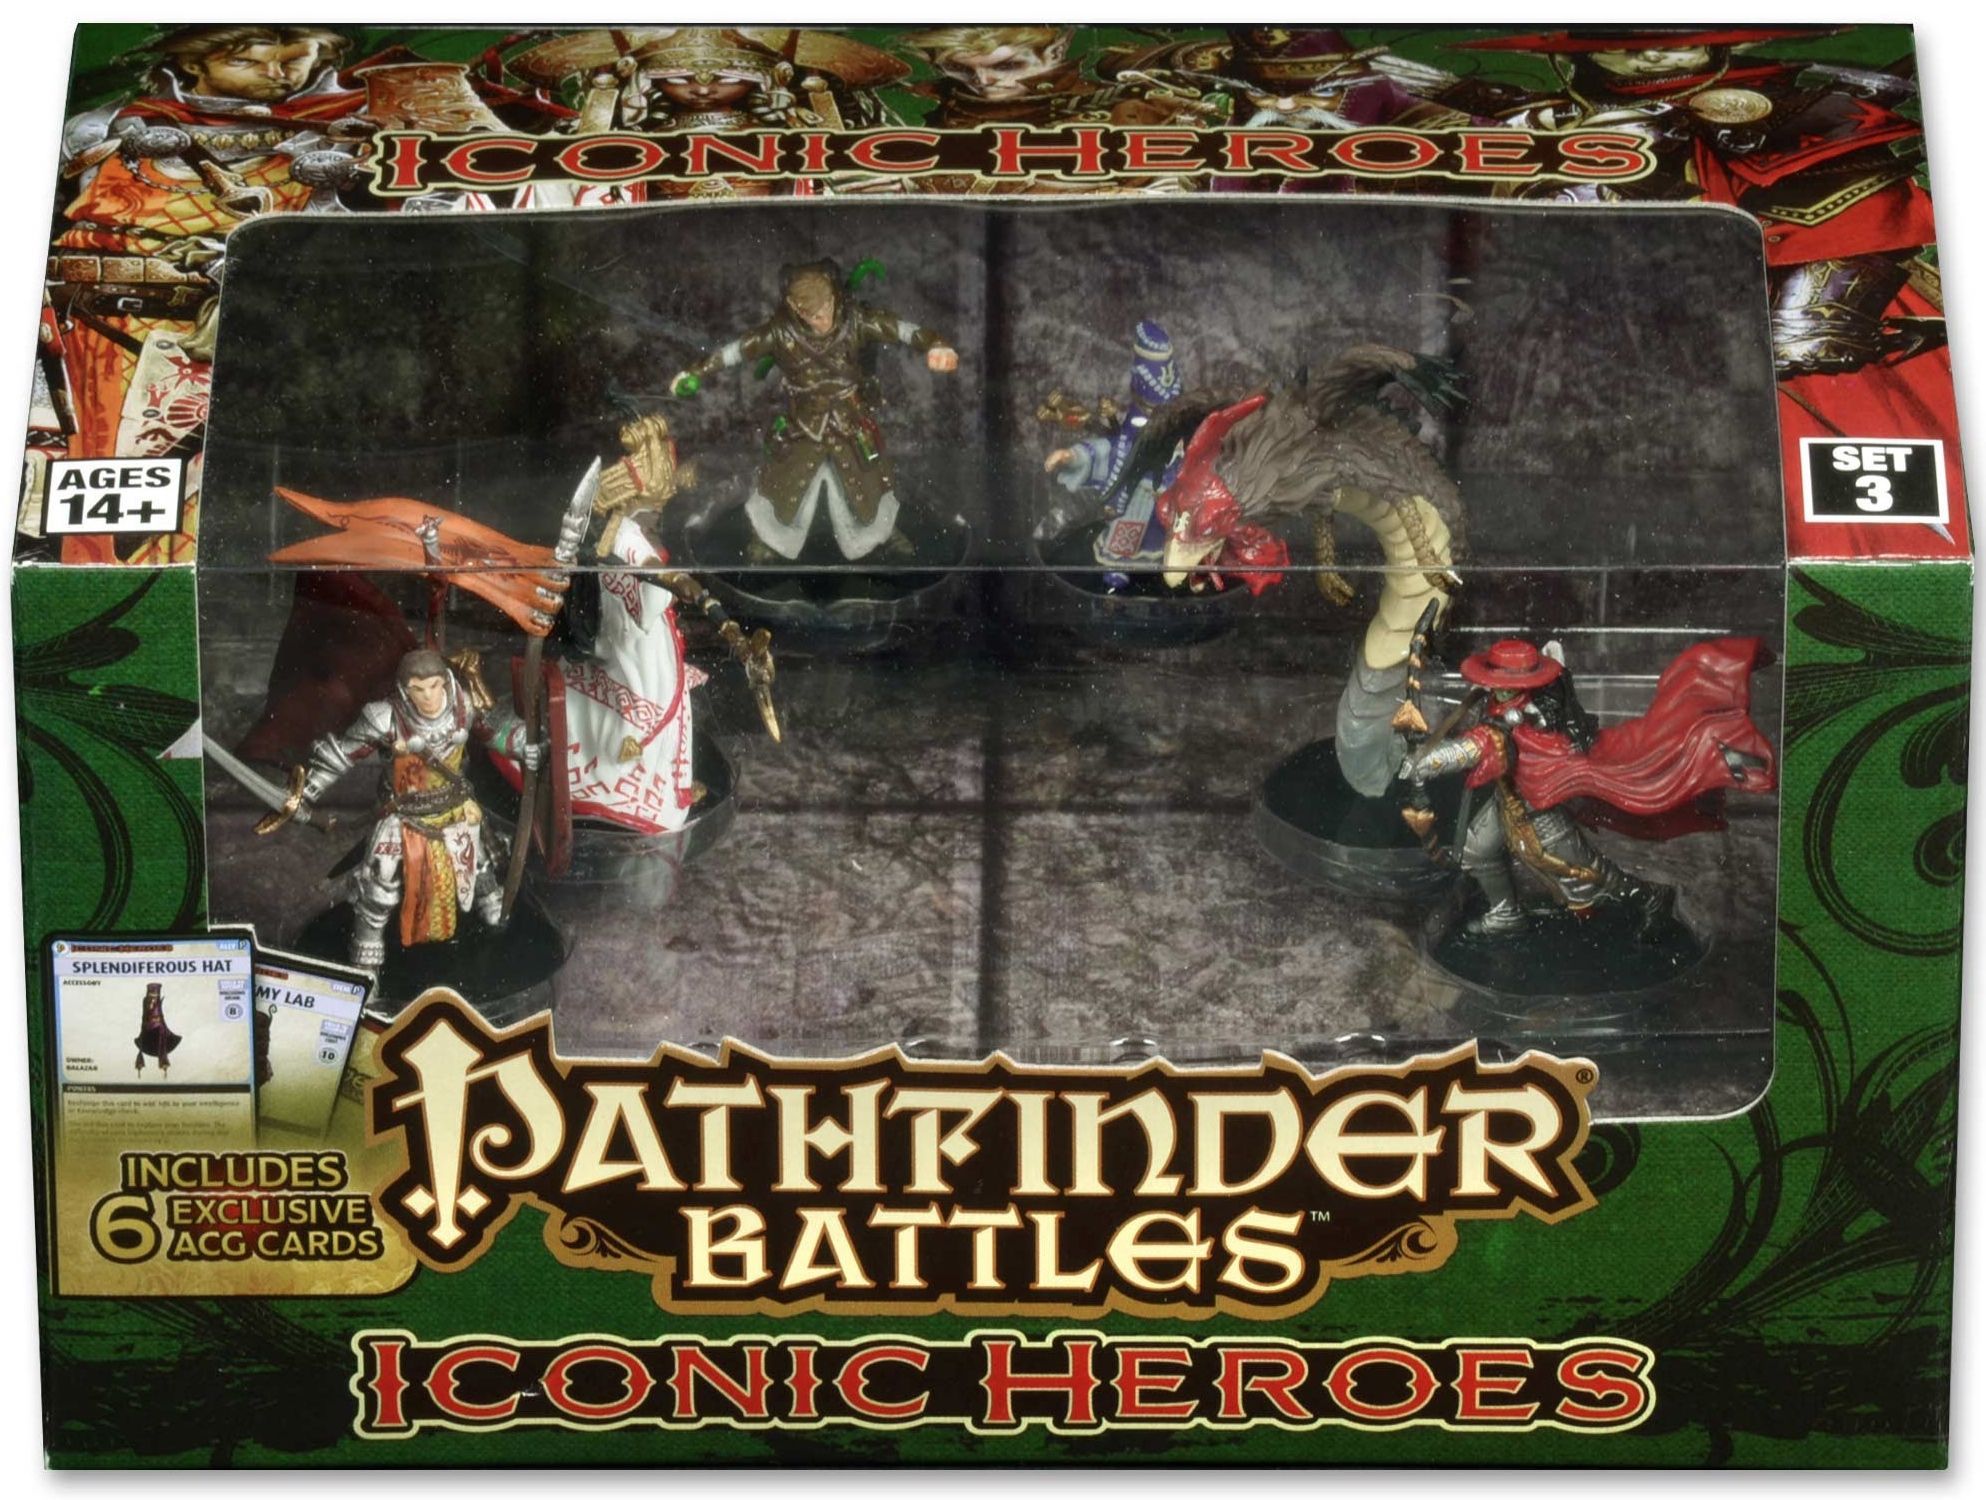 Pathfinder Battles: Iconic Heroes Set 3